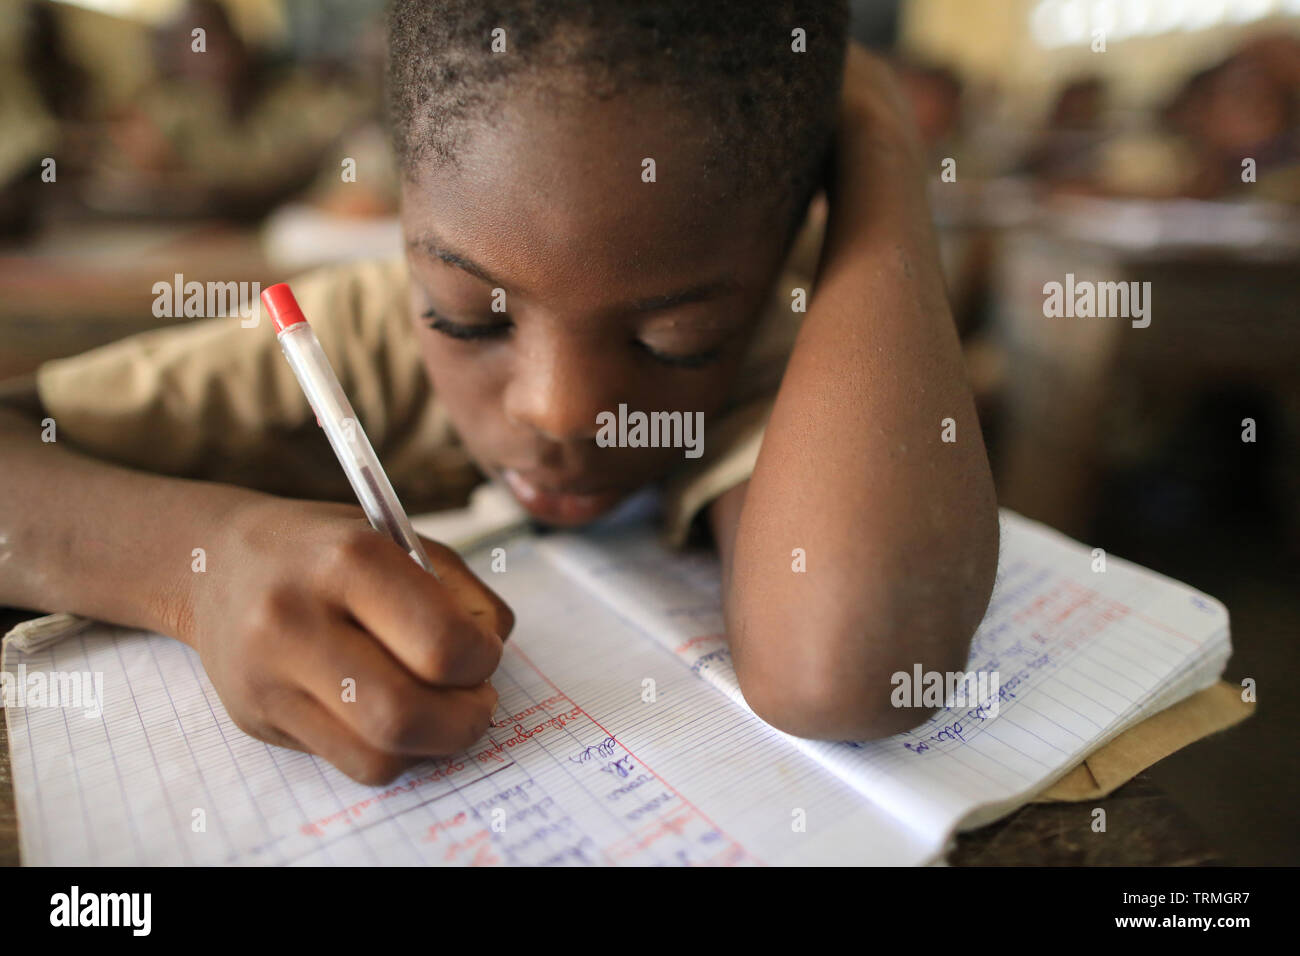 Ecole primaire d'Adjallé. La convenzione di Lomé. Il Togo. Afrique de l'Ouest. Foto Stock